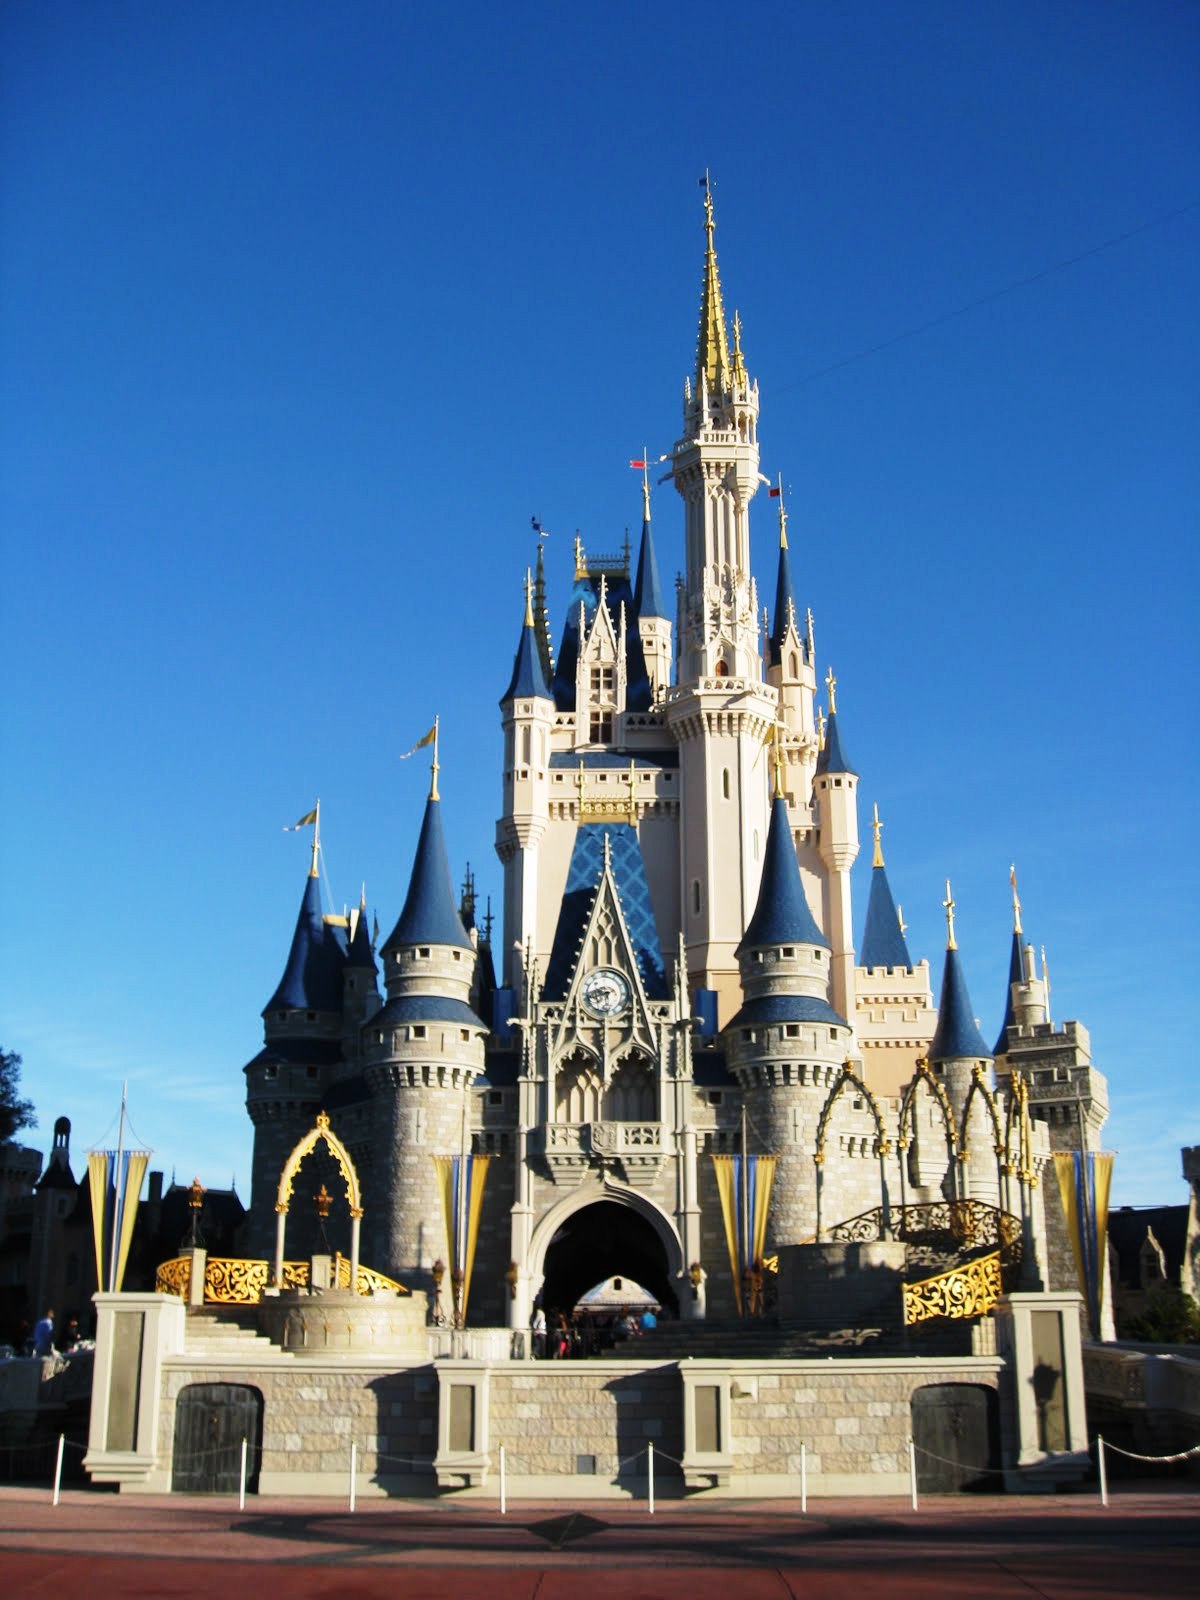 Cinderella Castle | Disney Wiki | FANDOM powered by Wikia